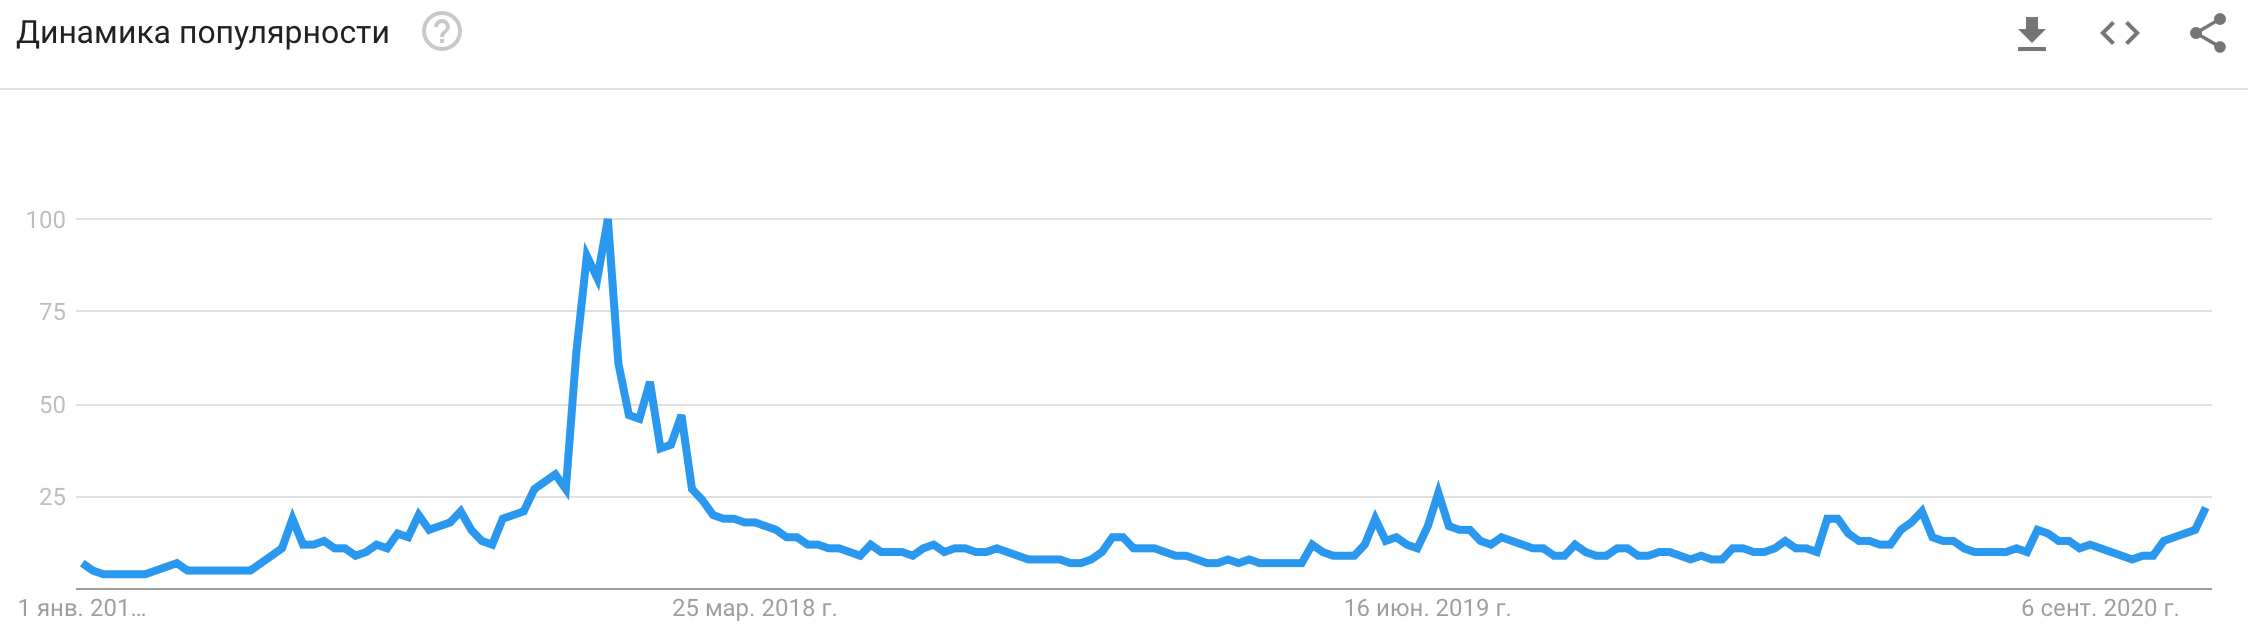 Динамика популярности Bitcoin в поисковой системе Google